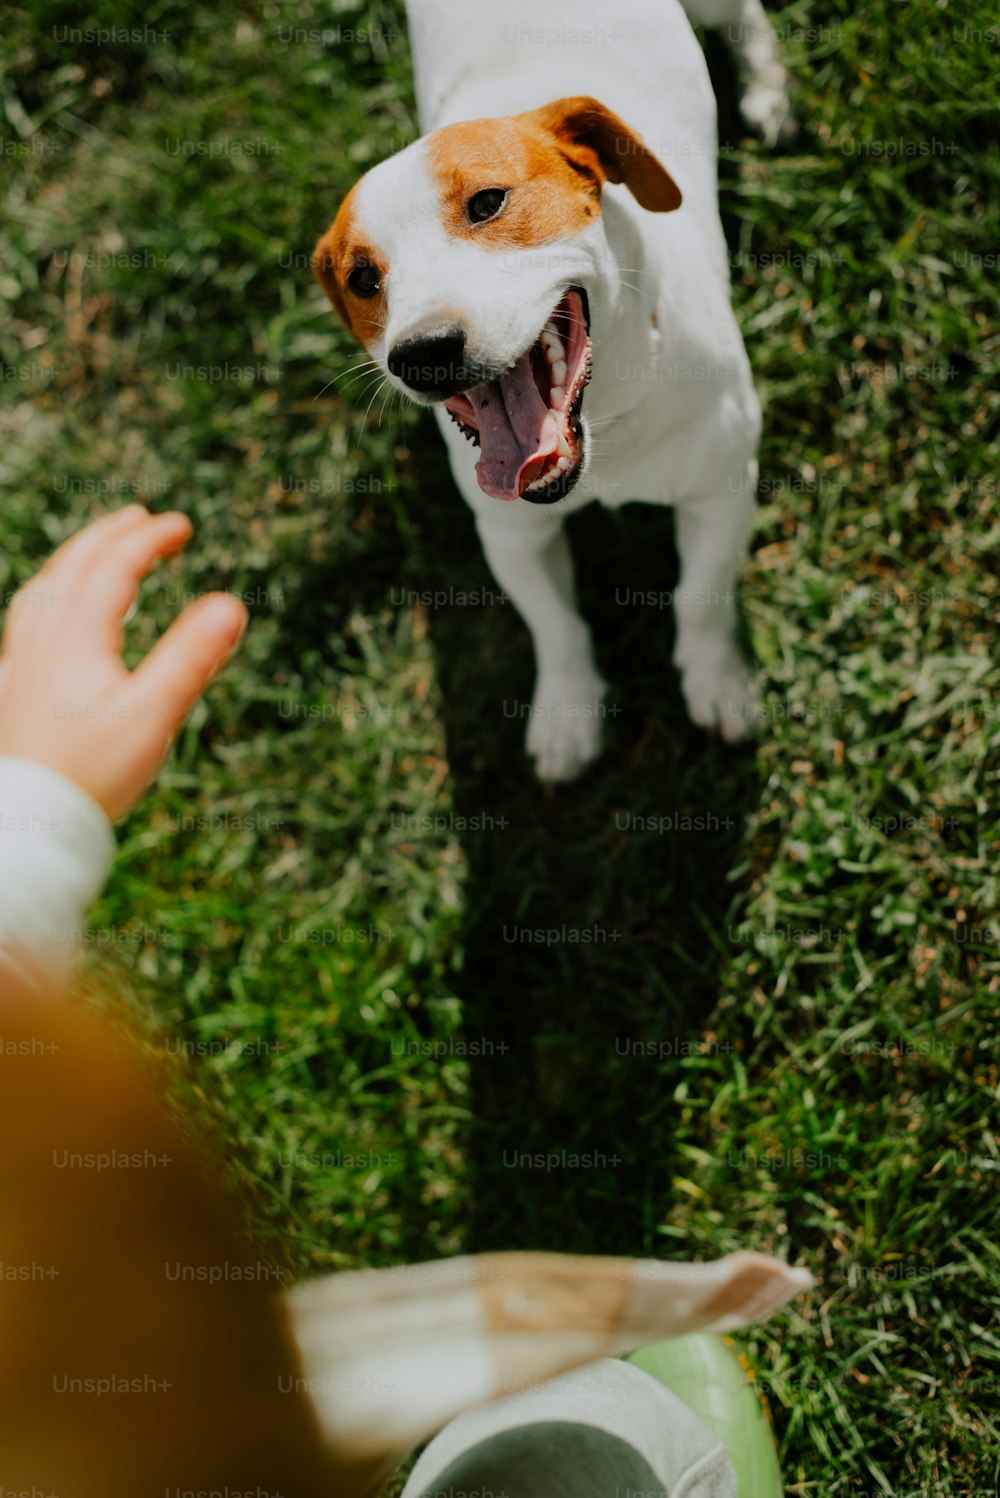 Un perro bosteza mientras una persona extiende su mano